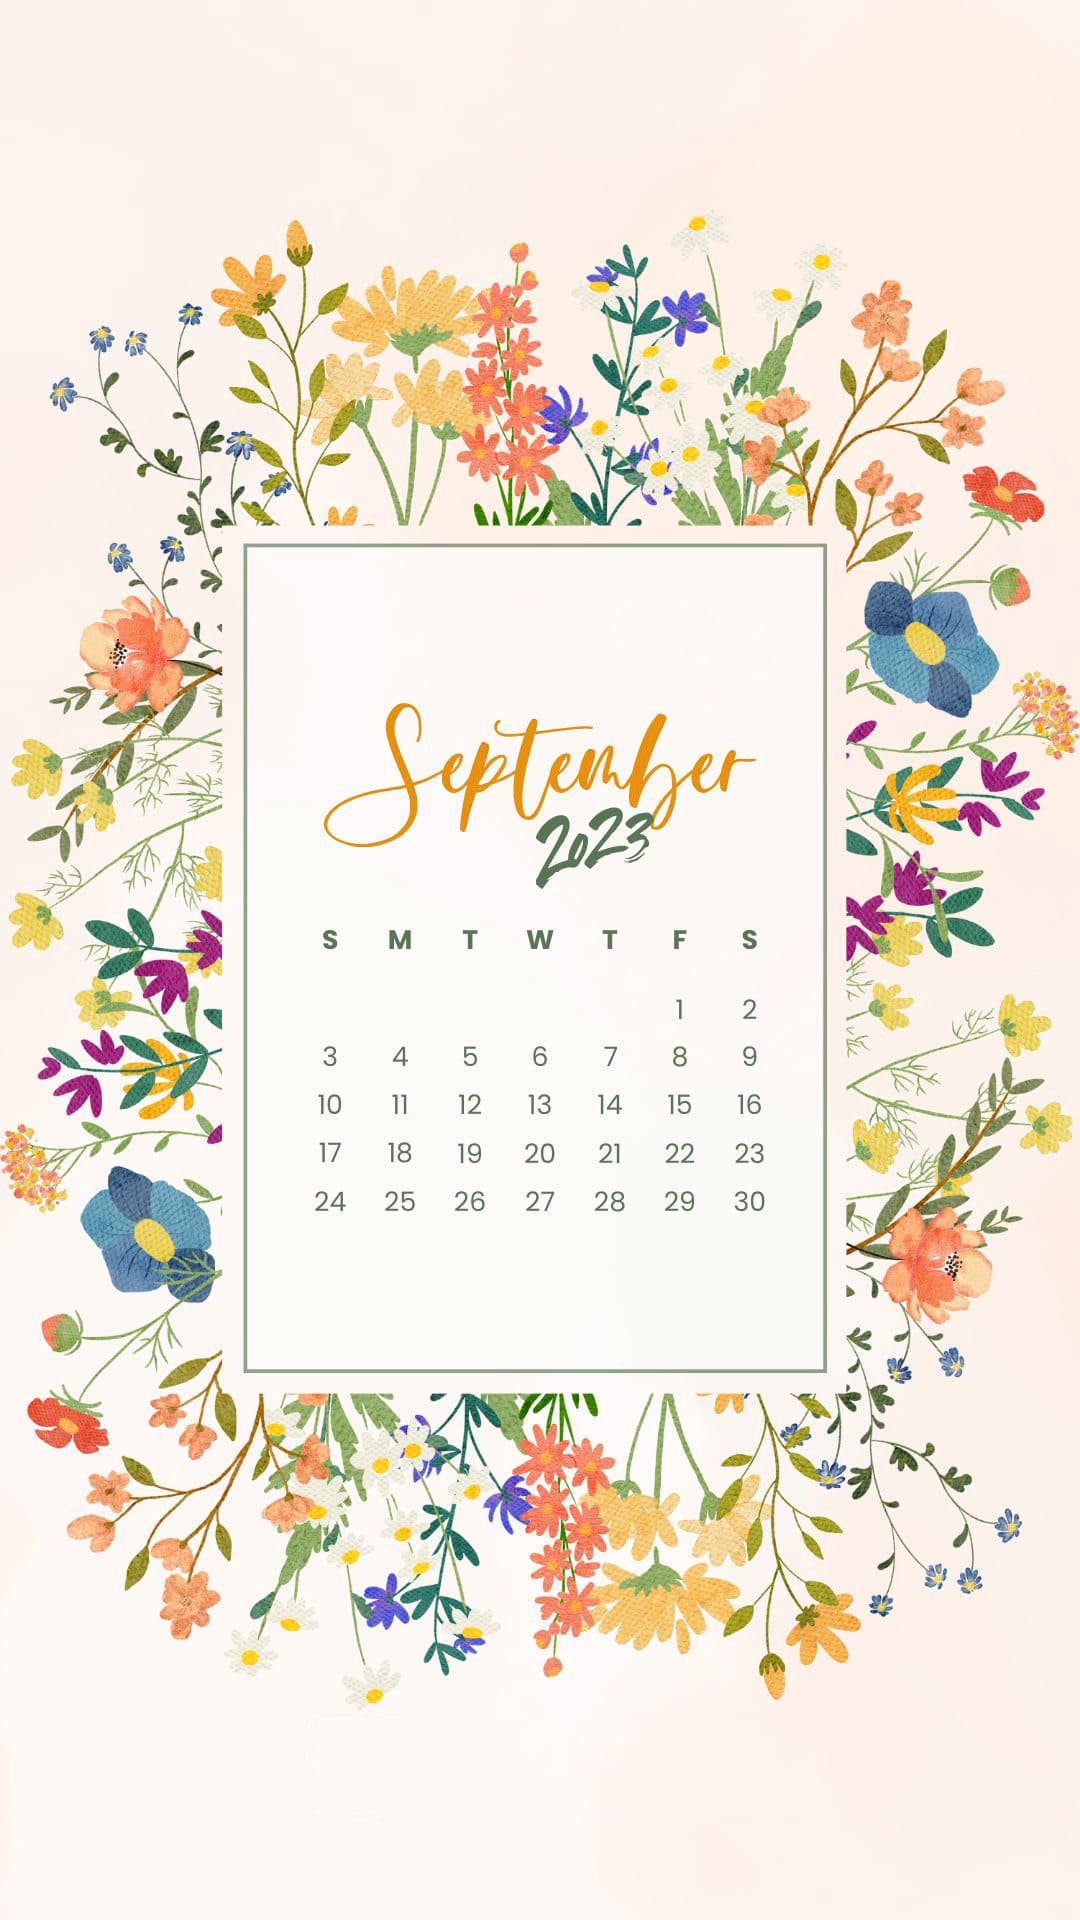 2023 September Calendar Wallpapers